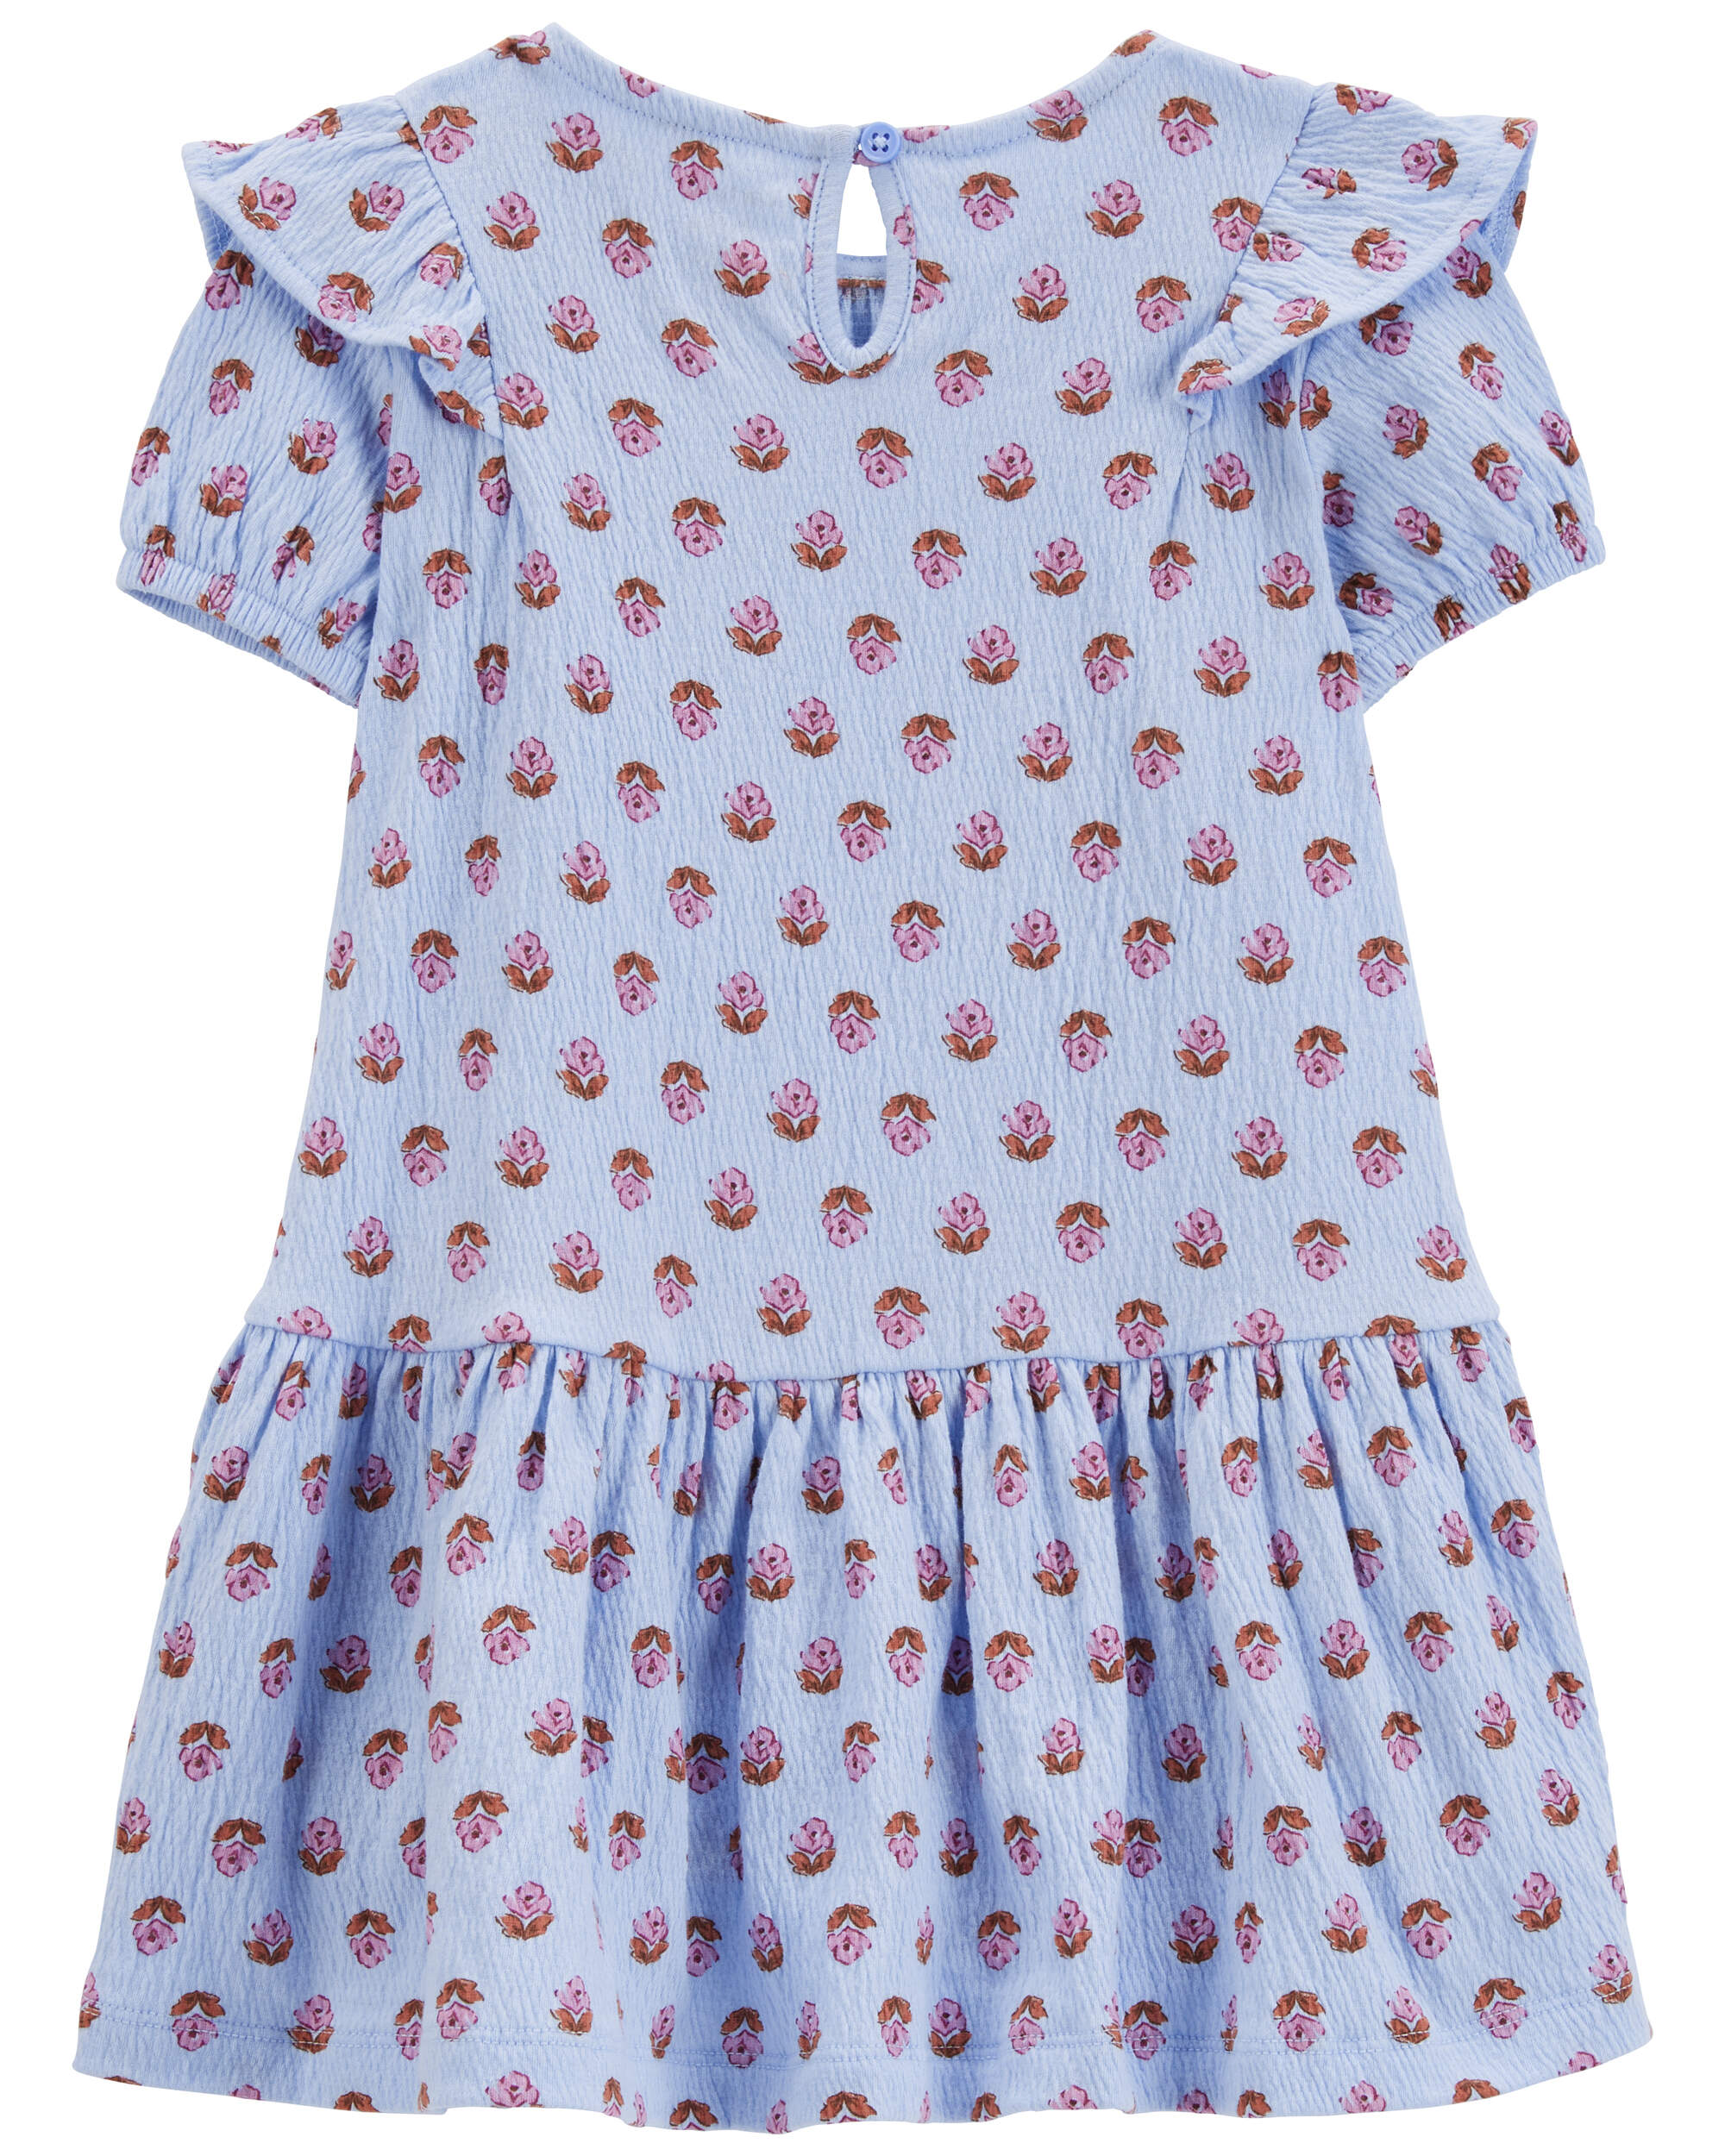 Toddler Floral Crinkle Jersey Dress